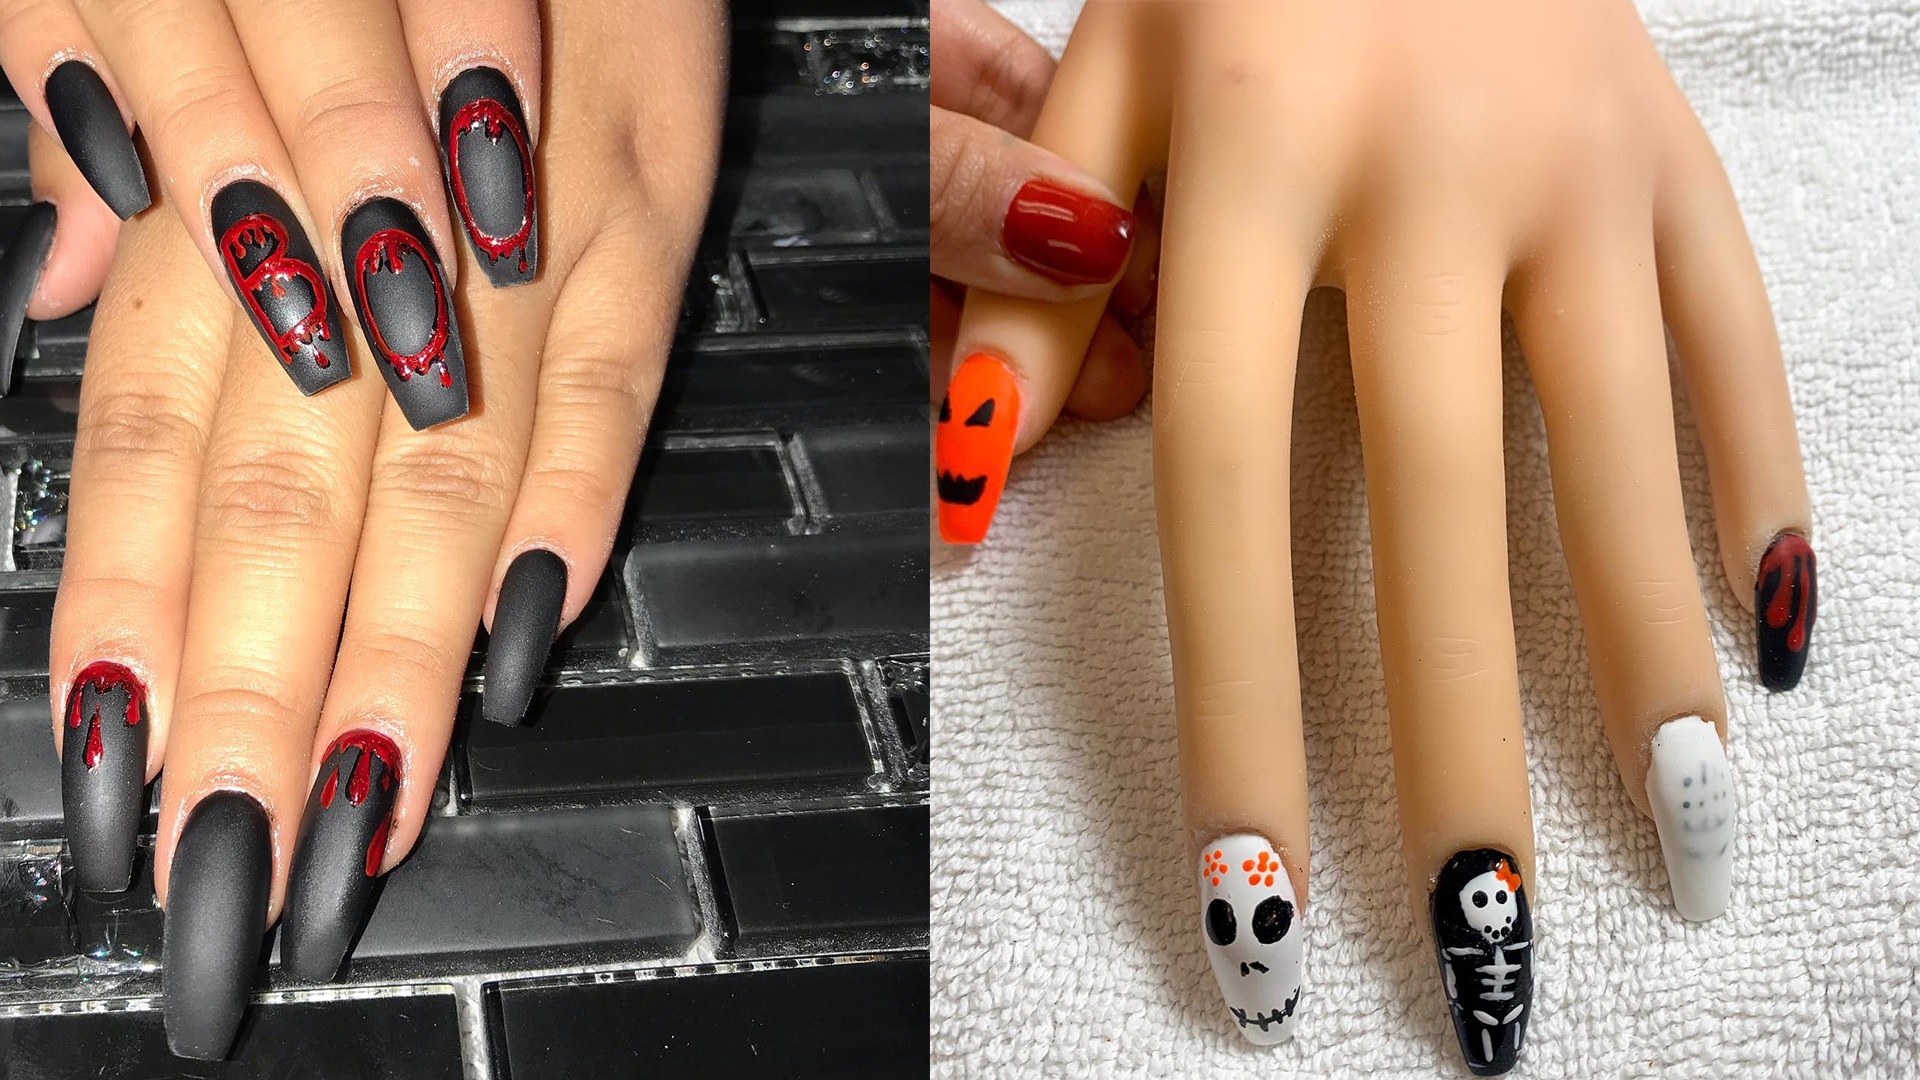 Đừng bỏ lỡ cơ hội để trở thành nghệ sĩ vẽ móng tay chuyên nghiệp với những gợi ý hướng dẫn vẽ nail Halloween cực hay chỉ có tại đây!